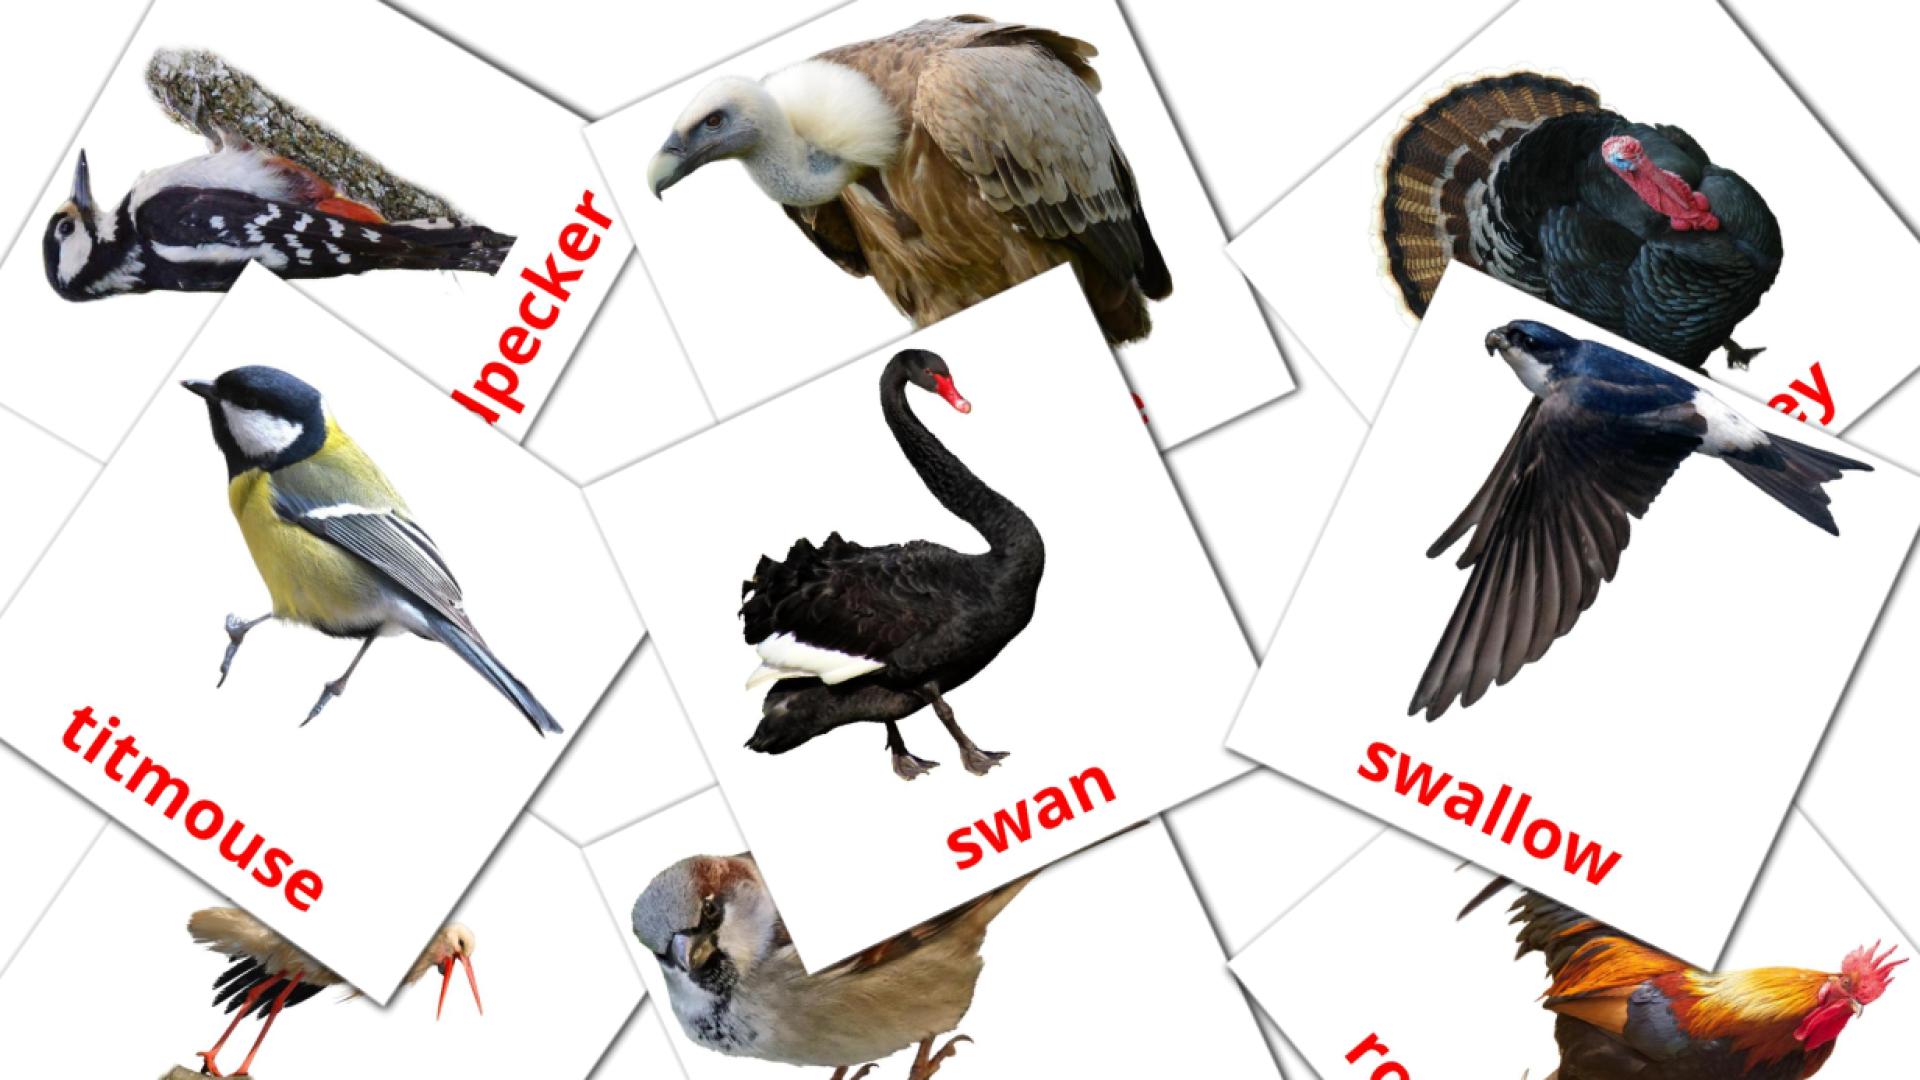 Birds macedonian vocabulary flashcards